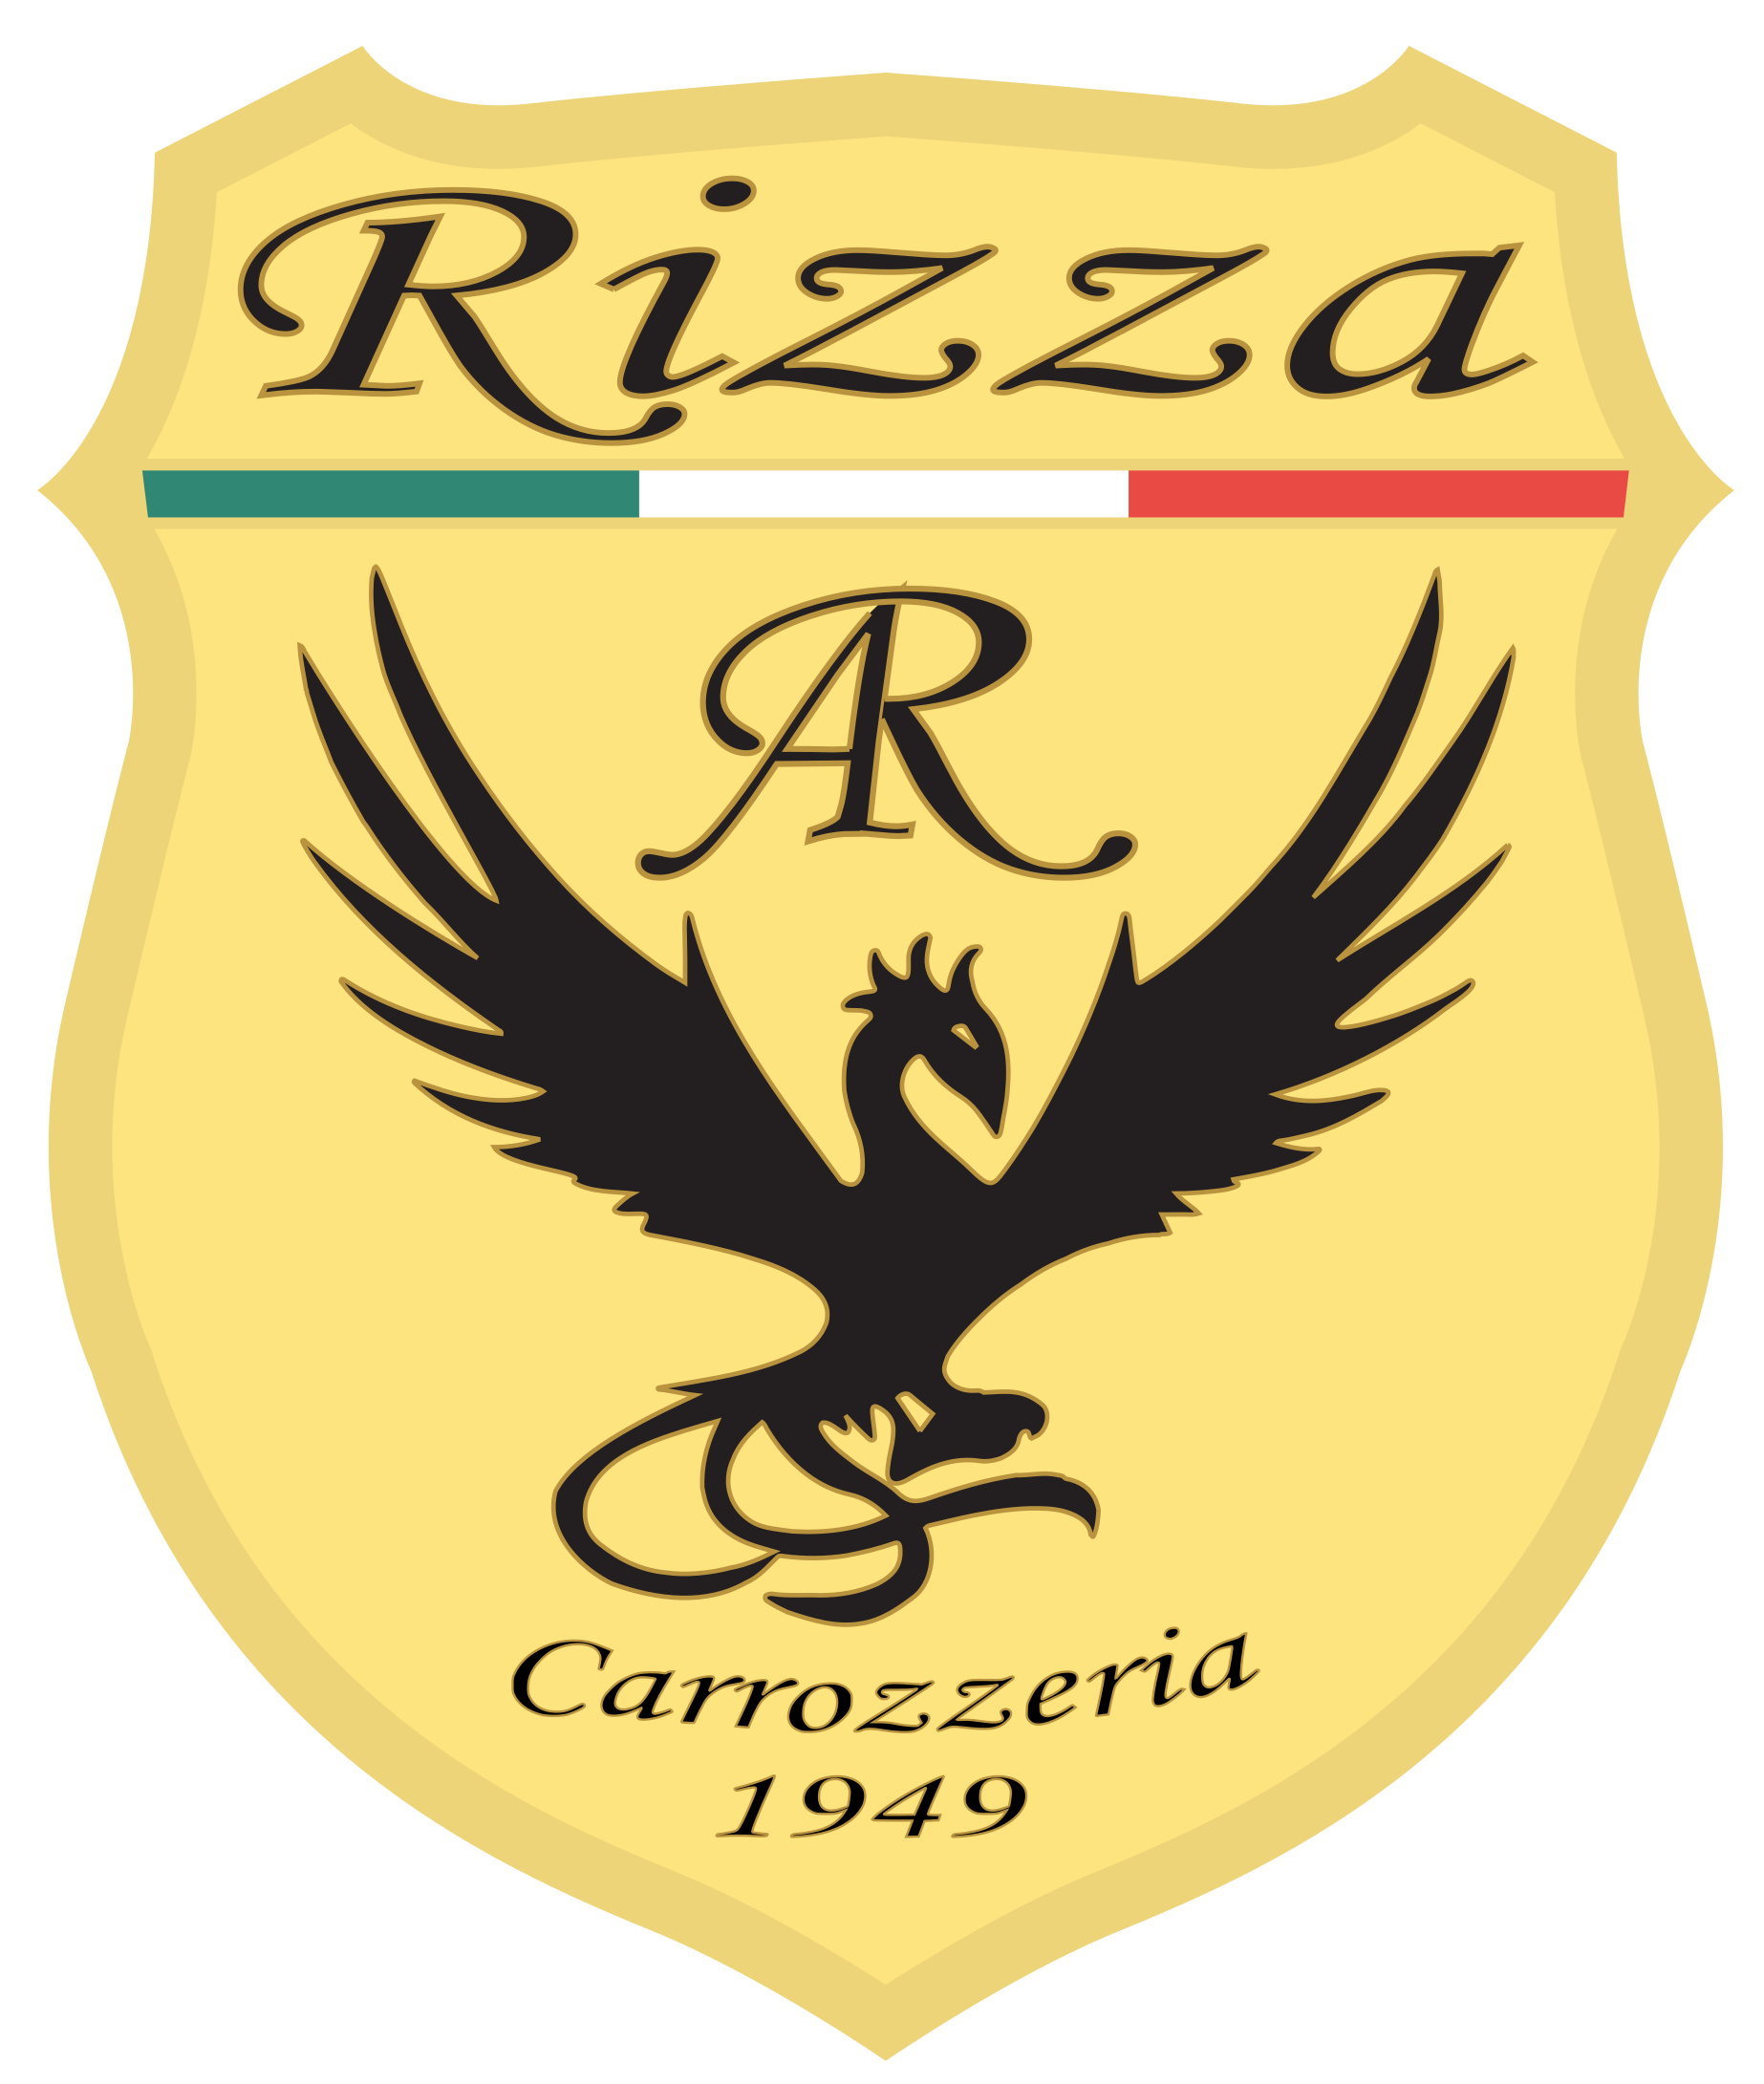 Carrozzeria Rizza